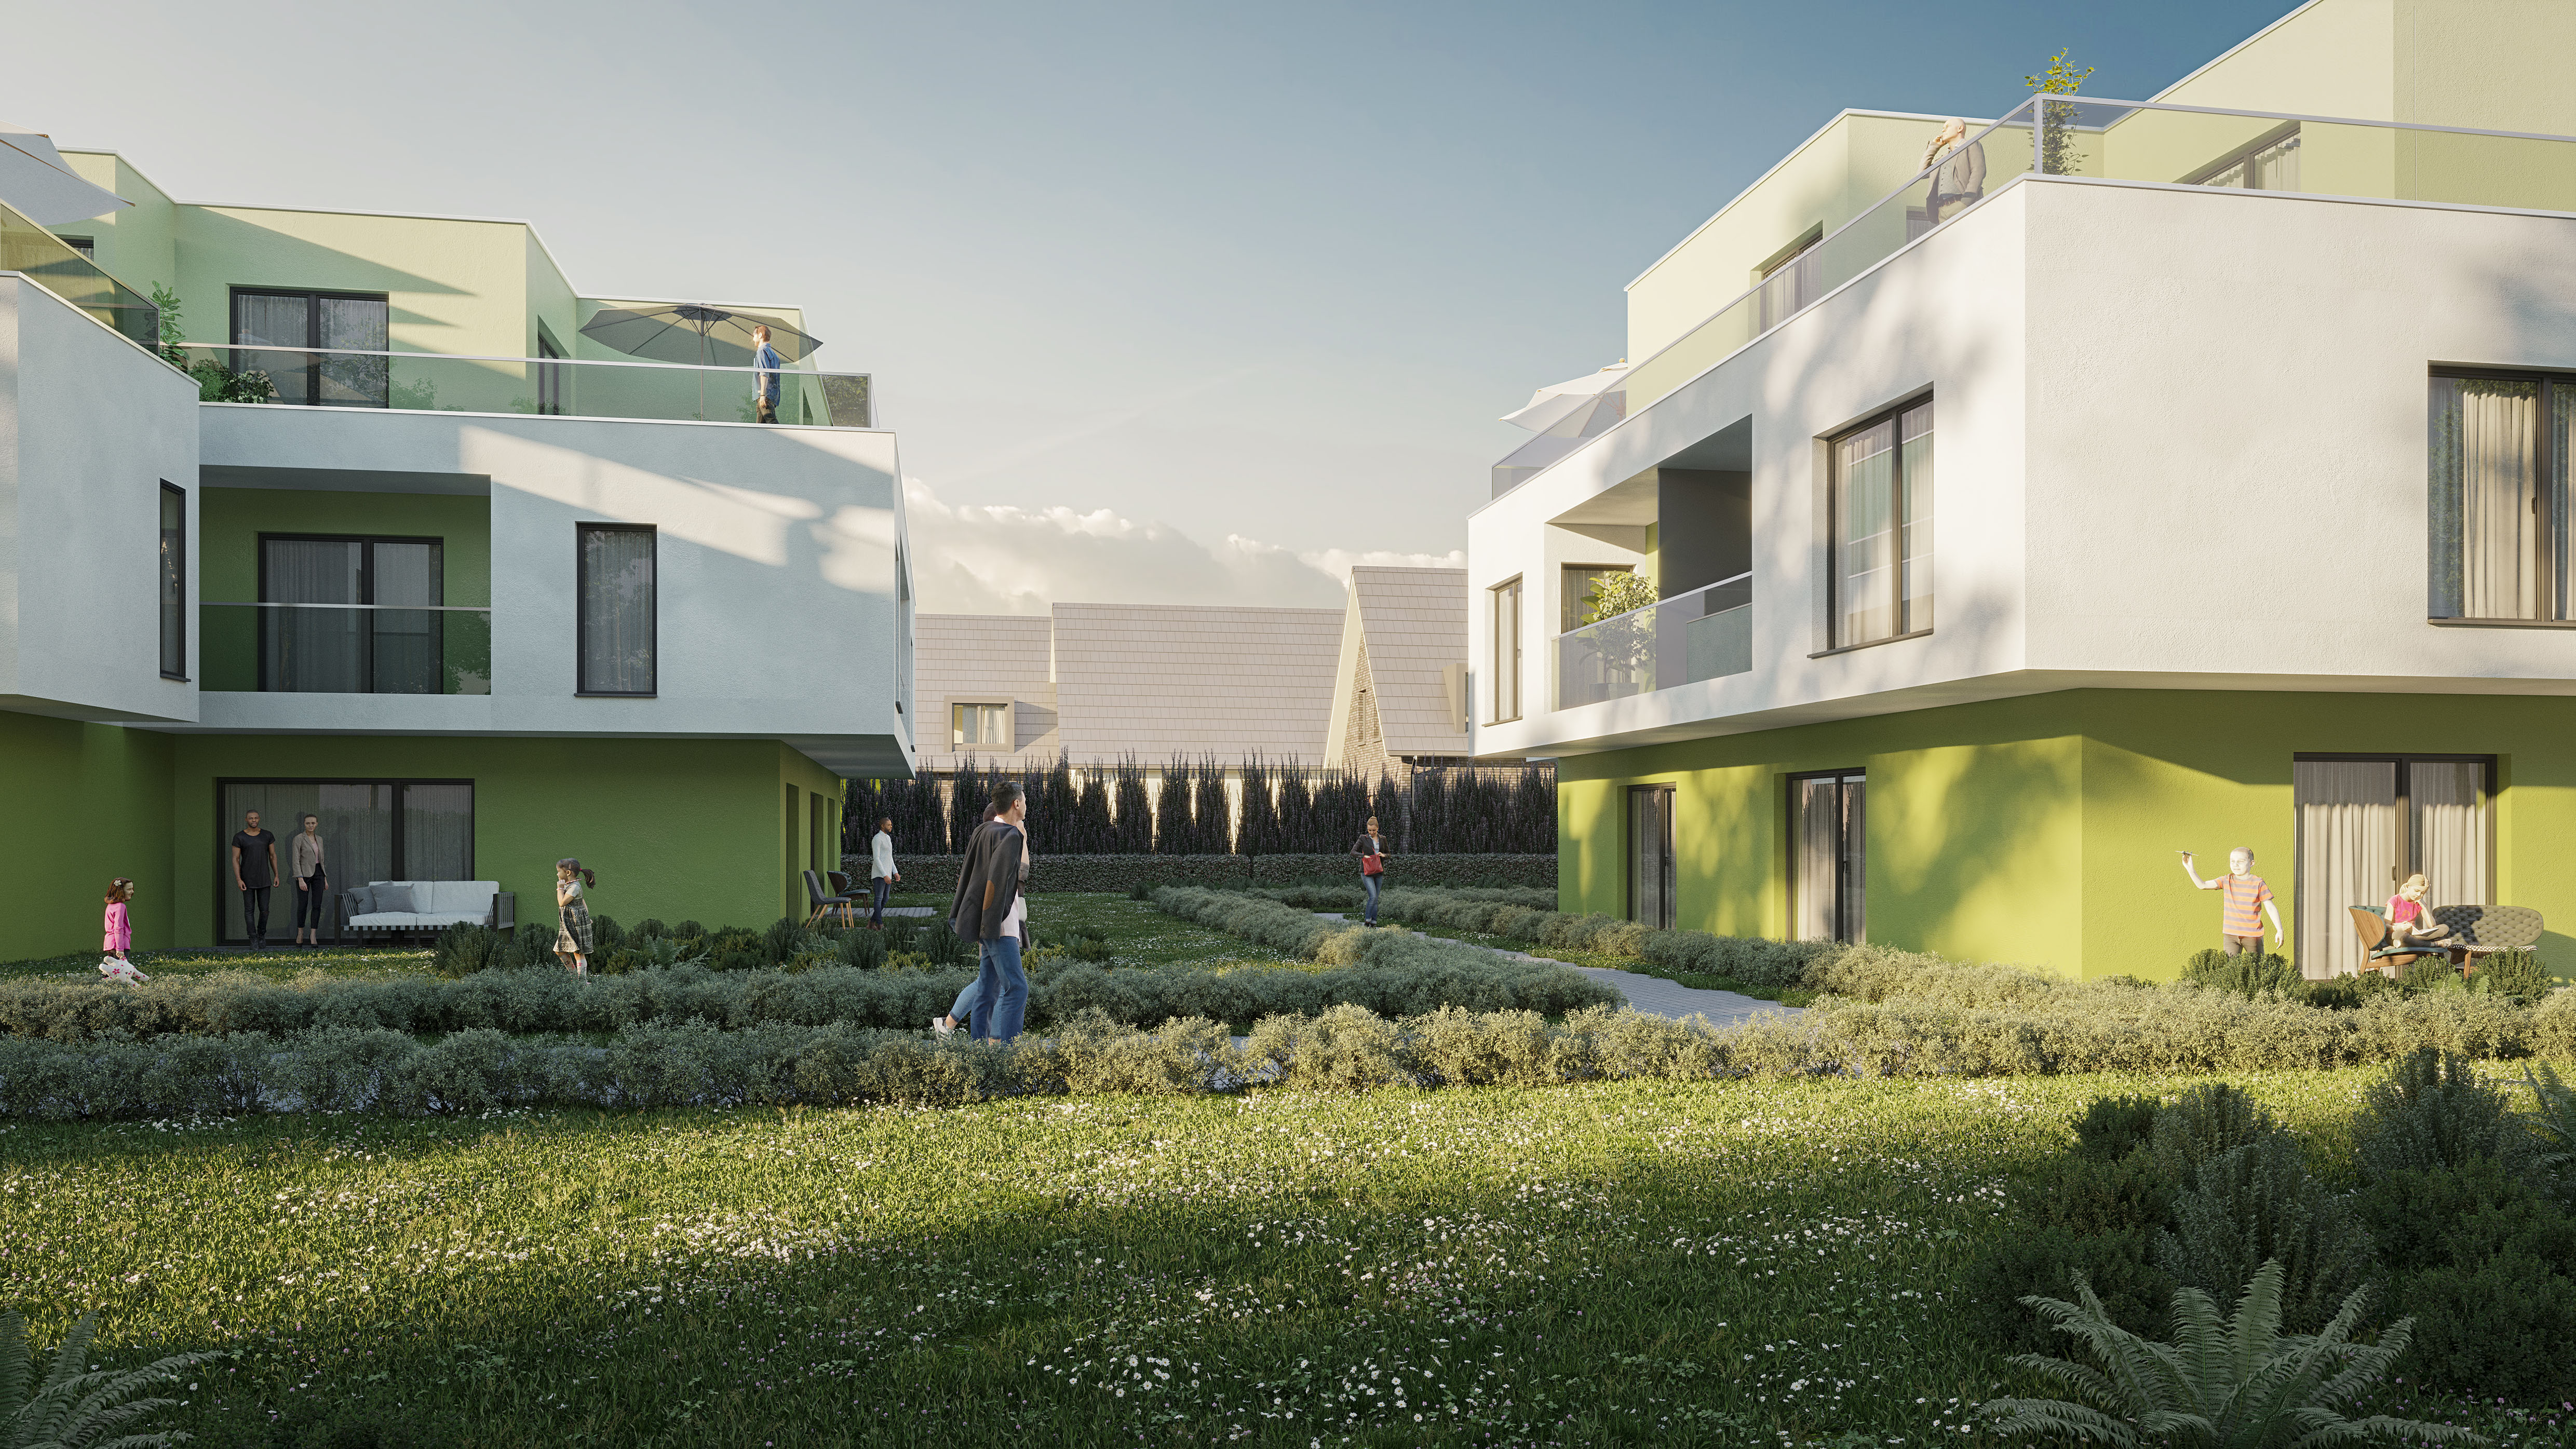 Vorentwurf/Rendering/Visualisierung einer Wohnhausanlage in Wien von den Paschinger Architekten aus Wien.